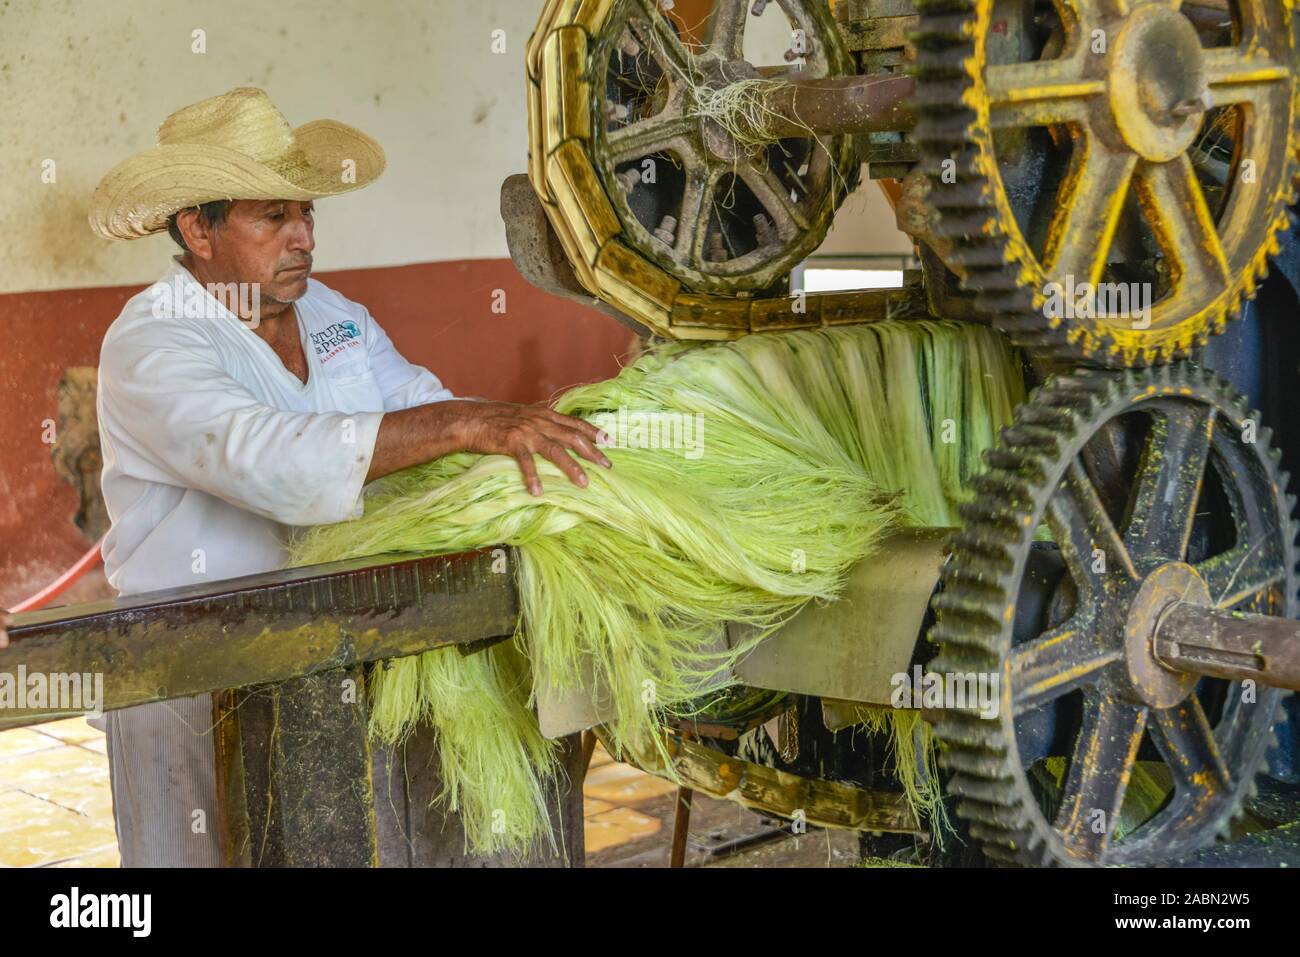 Maschine zum Quetschen von Sisal-Agaven Landwirtschaftsmuseum, von, Sisalfasern, Hacienda Sotuta de Peon, Yucatan, Mexique Banque D'Images